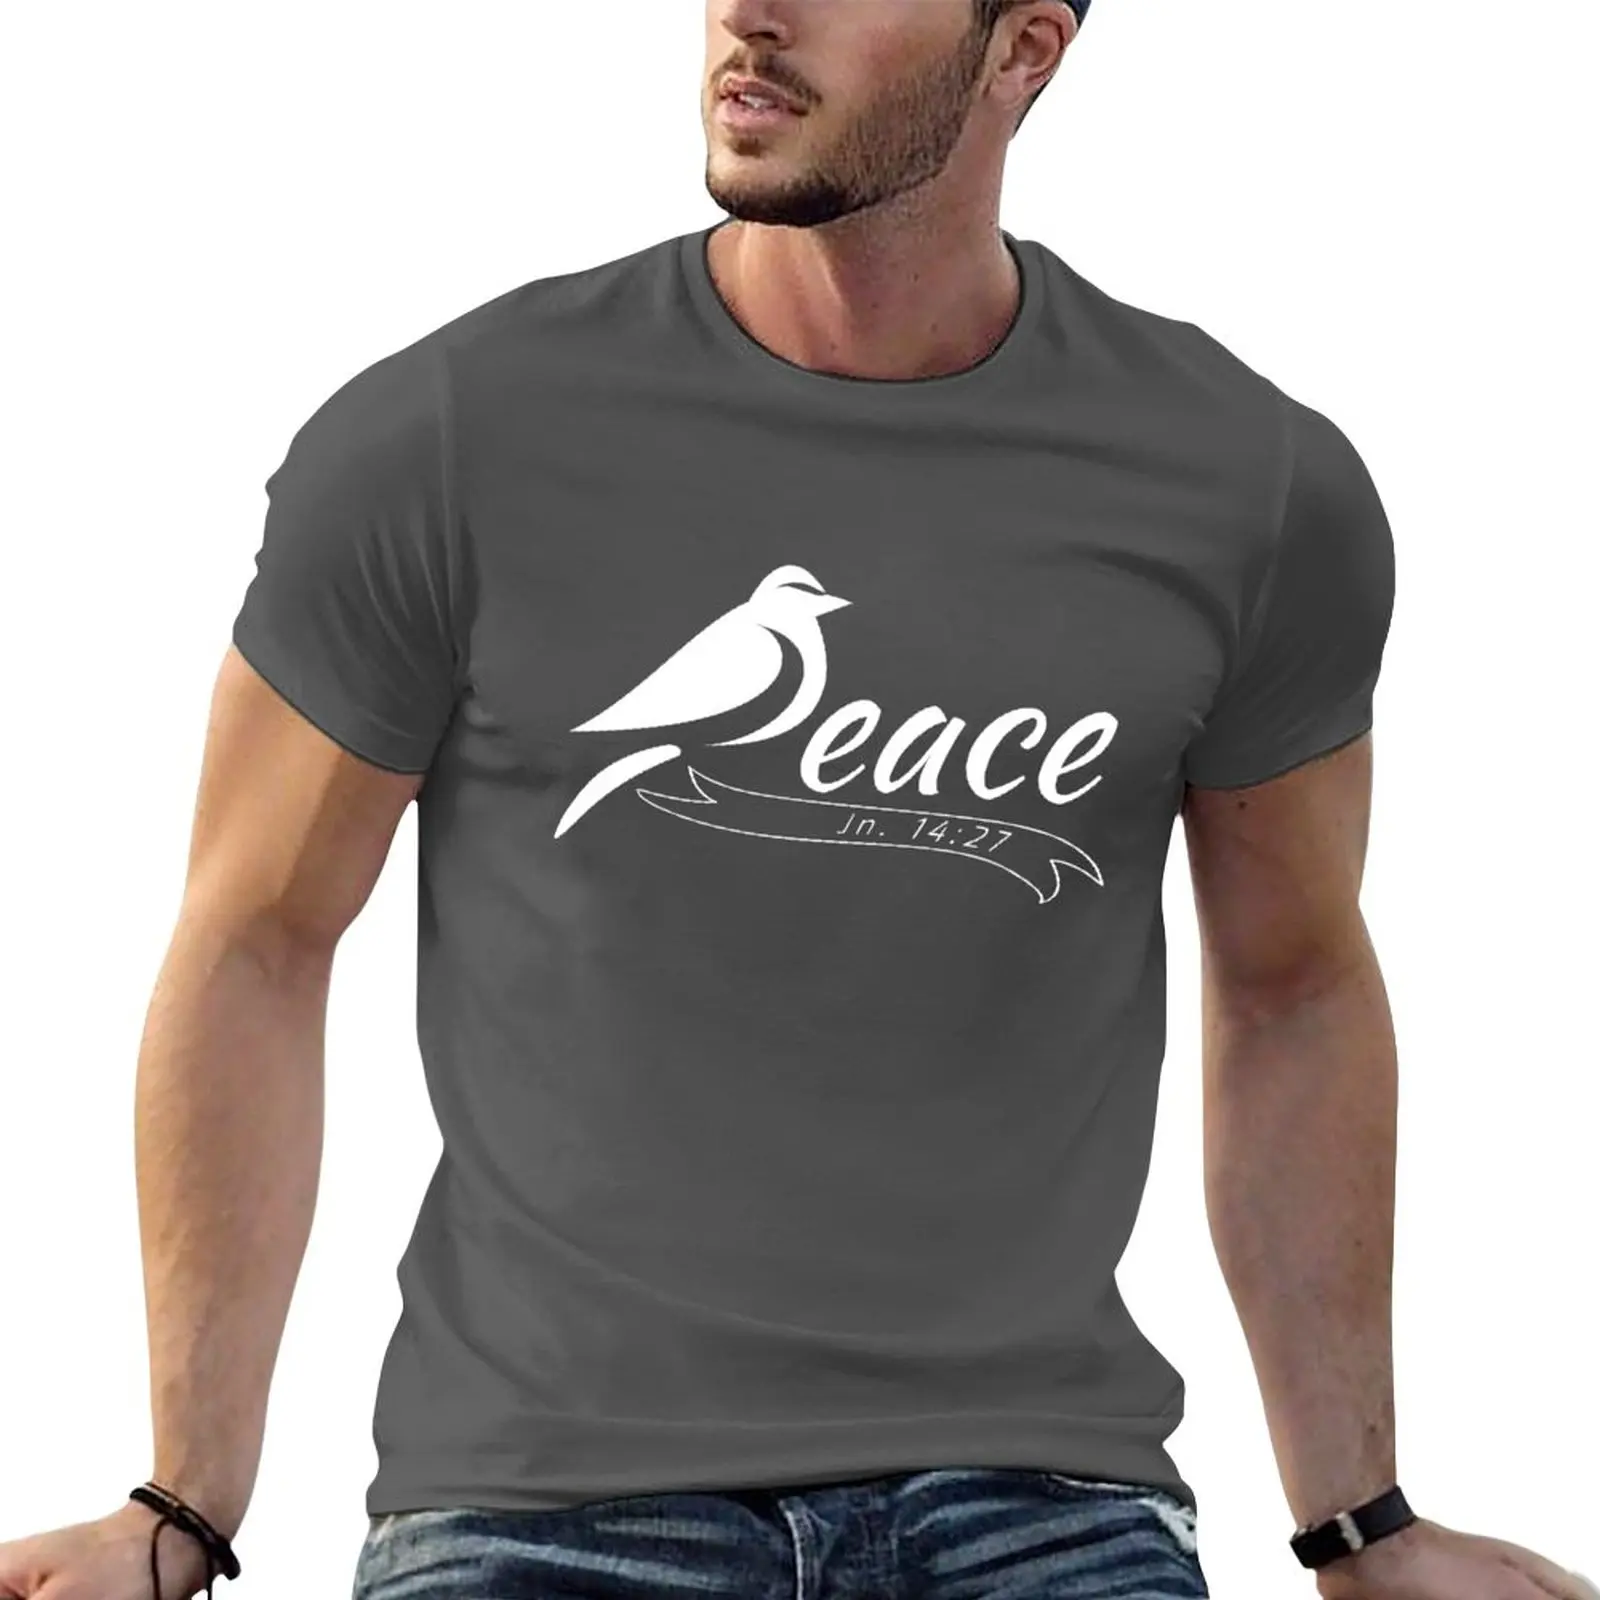 

Новая футболка Peace - John 14:27, футболка, футболка оверсайз, футболки с графическим рисунком, топы, мужская одежда